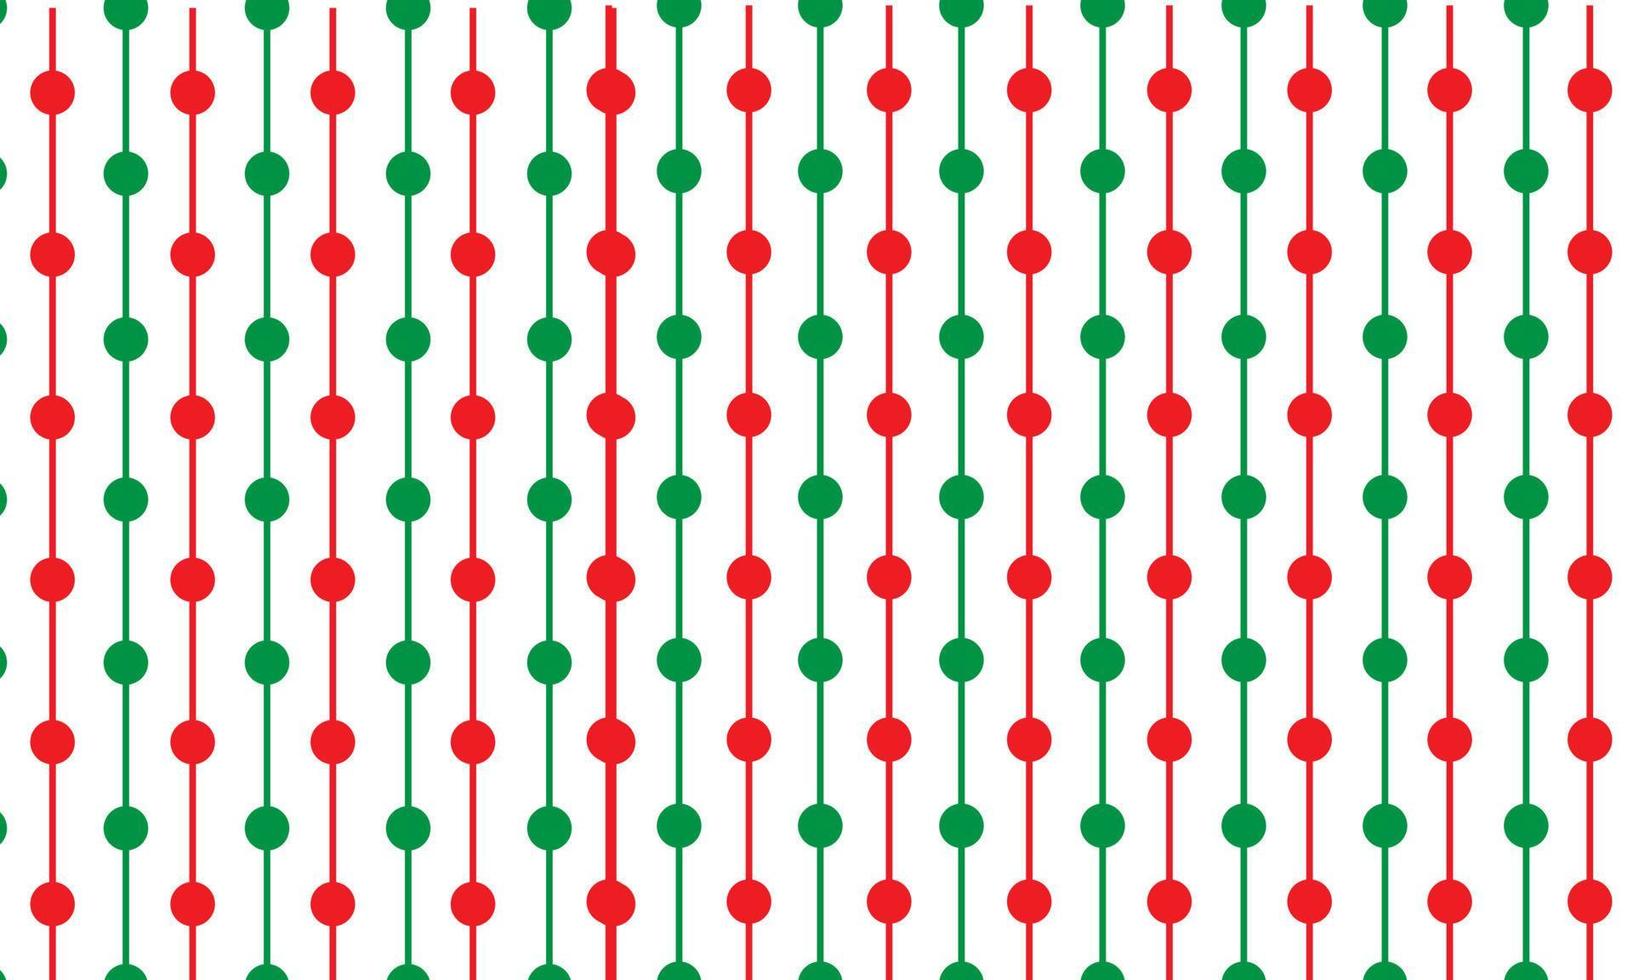 rood groen stippel structuur sjabloon. meetkundig patroon in halftone stijl met helling voor vieren presentatie vector